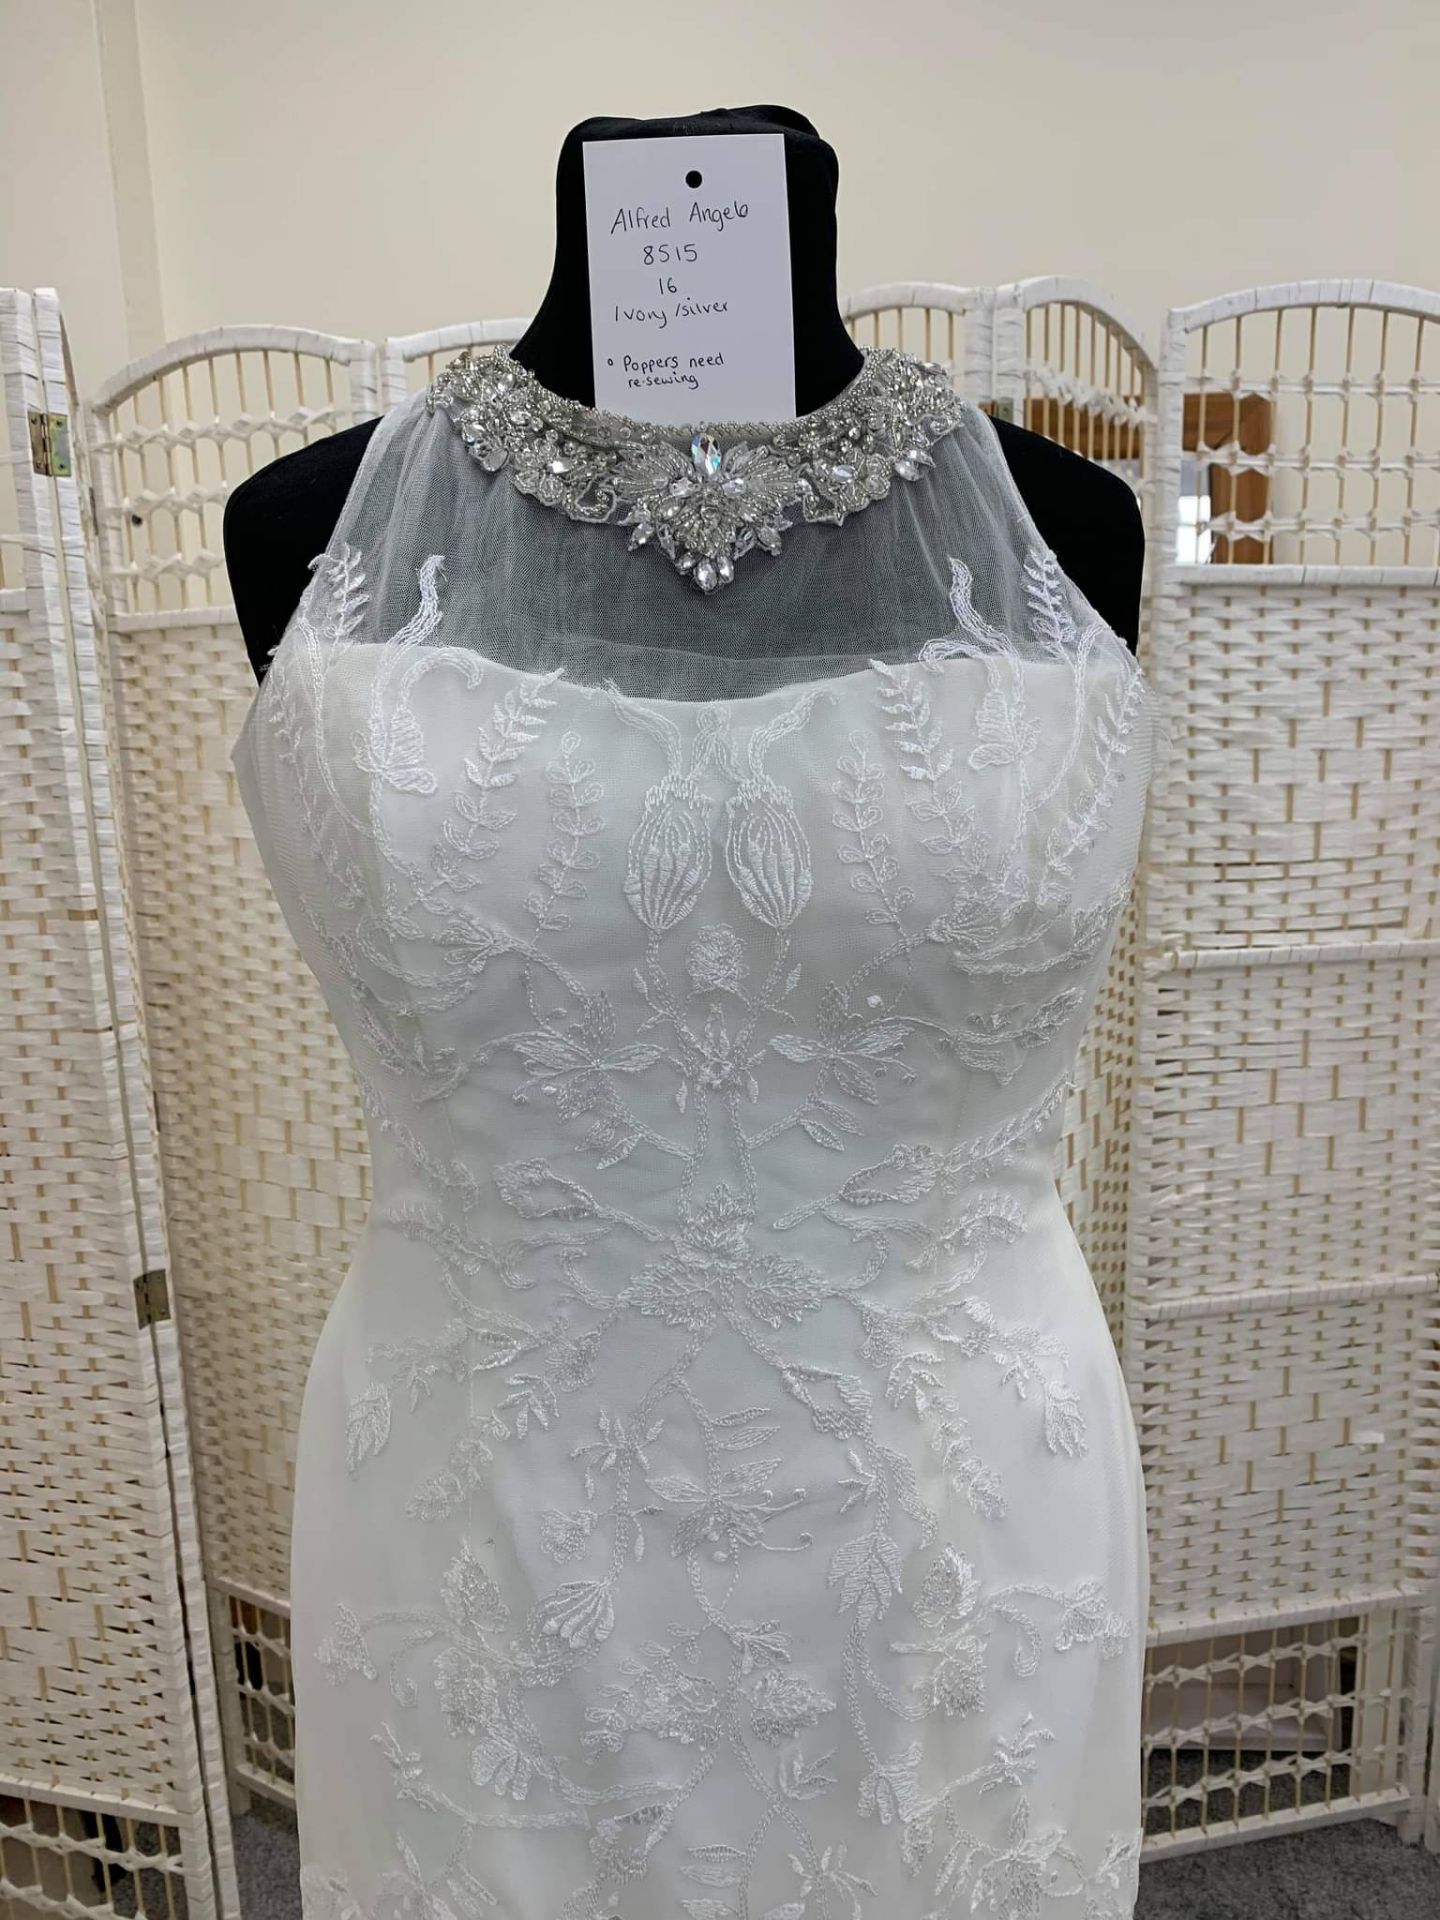 Alfred Angelo Wedding Dress UK 8516 Size 16 - Bild 3 aus 3